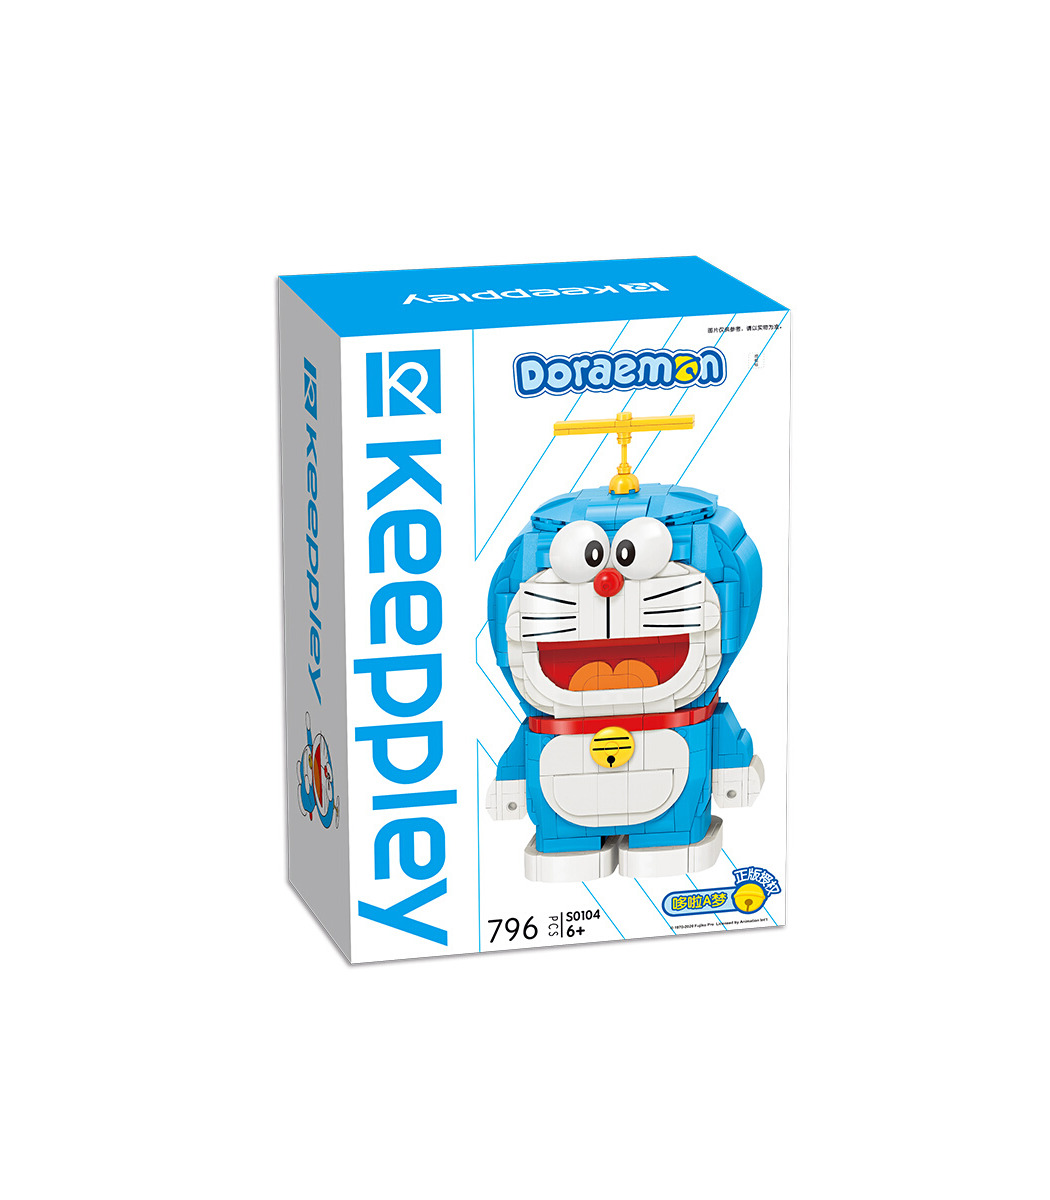 Keeppley Doraemon S0104 Collector Edition QMAN Bausteine Spielzeugset